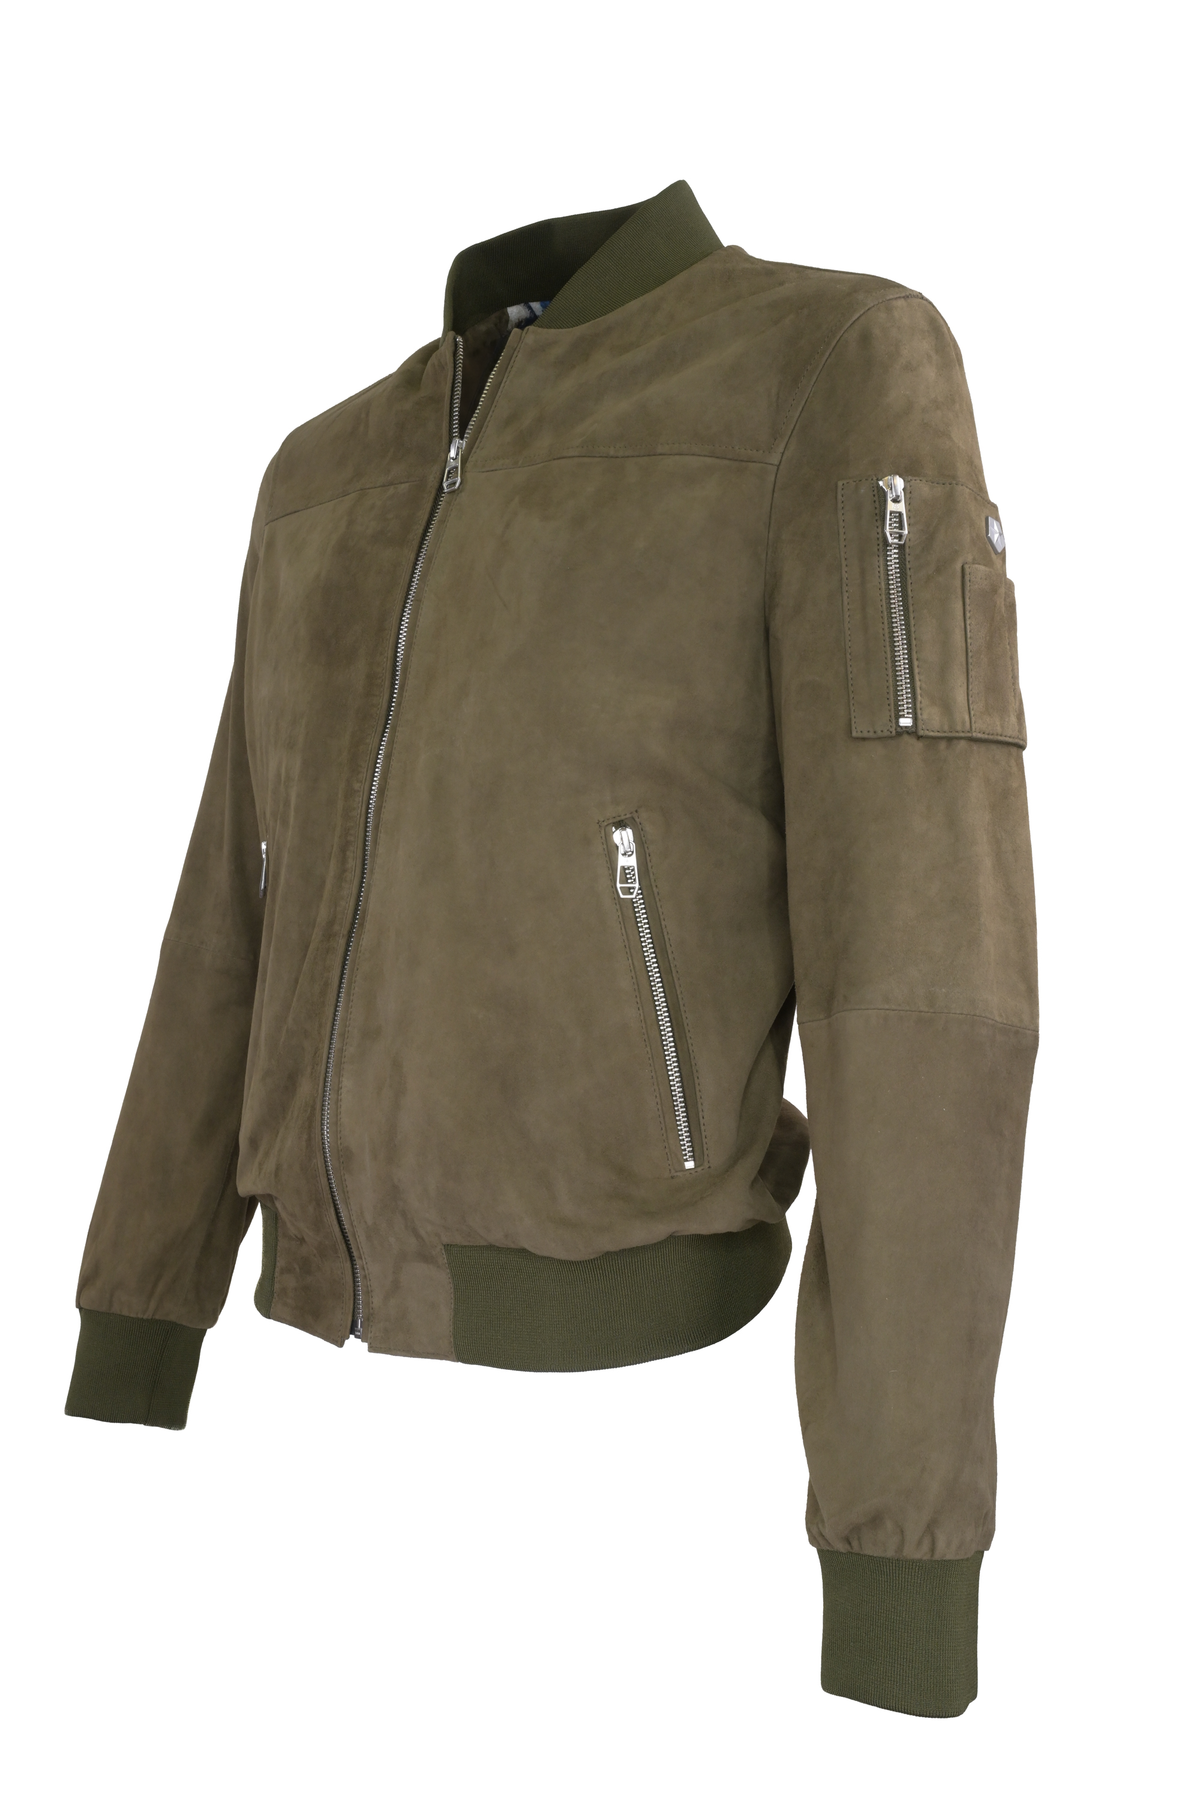 Milestone Victor Leather Jacket